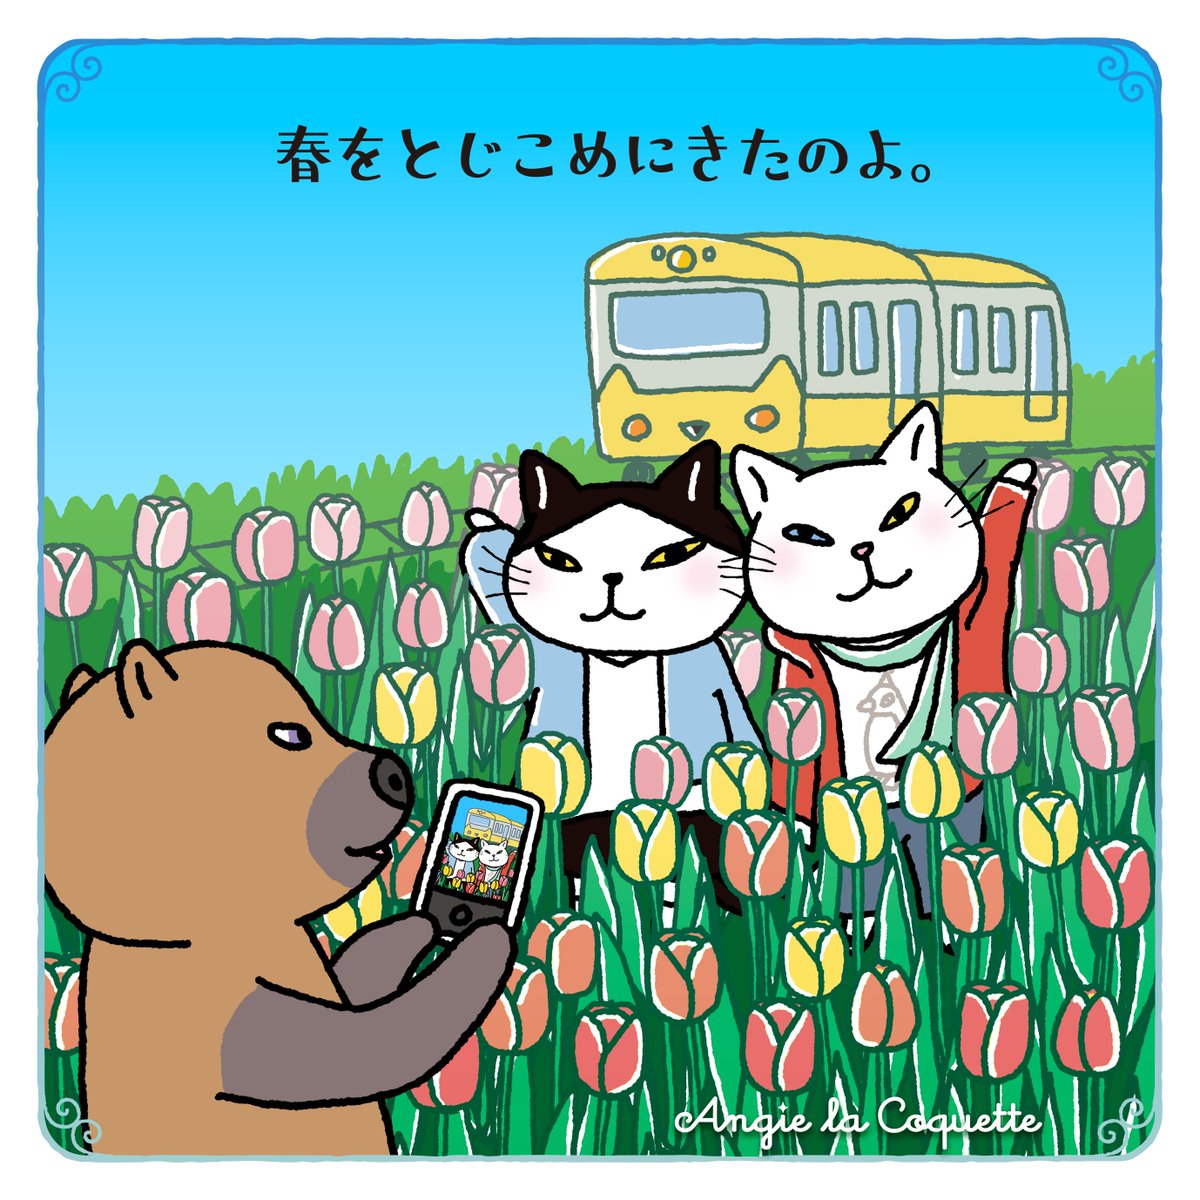 お花畑を走る電車。テオくん、素敵な写真撮れたかな？

#猫 #電車旅